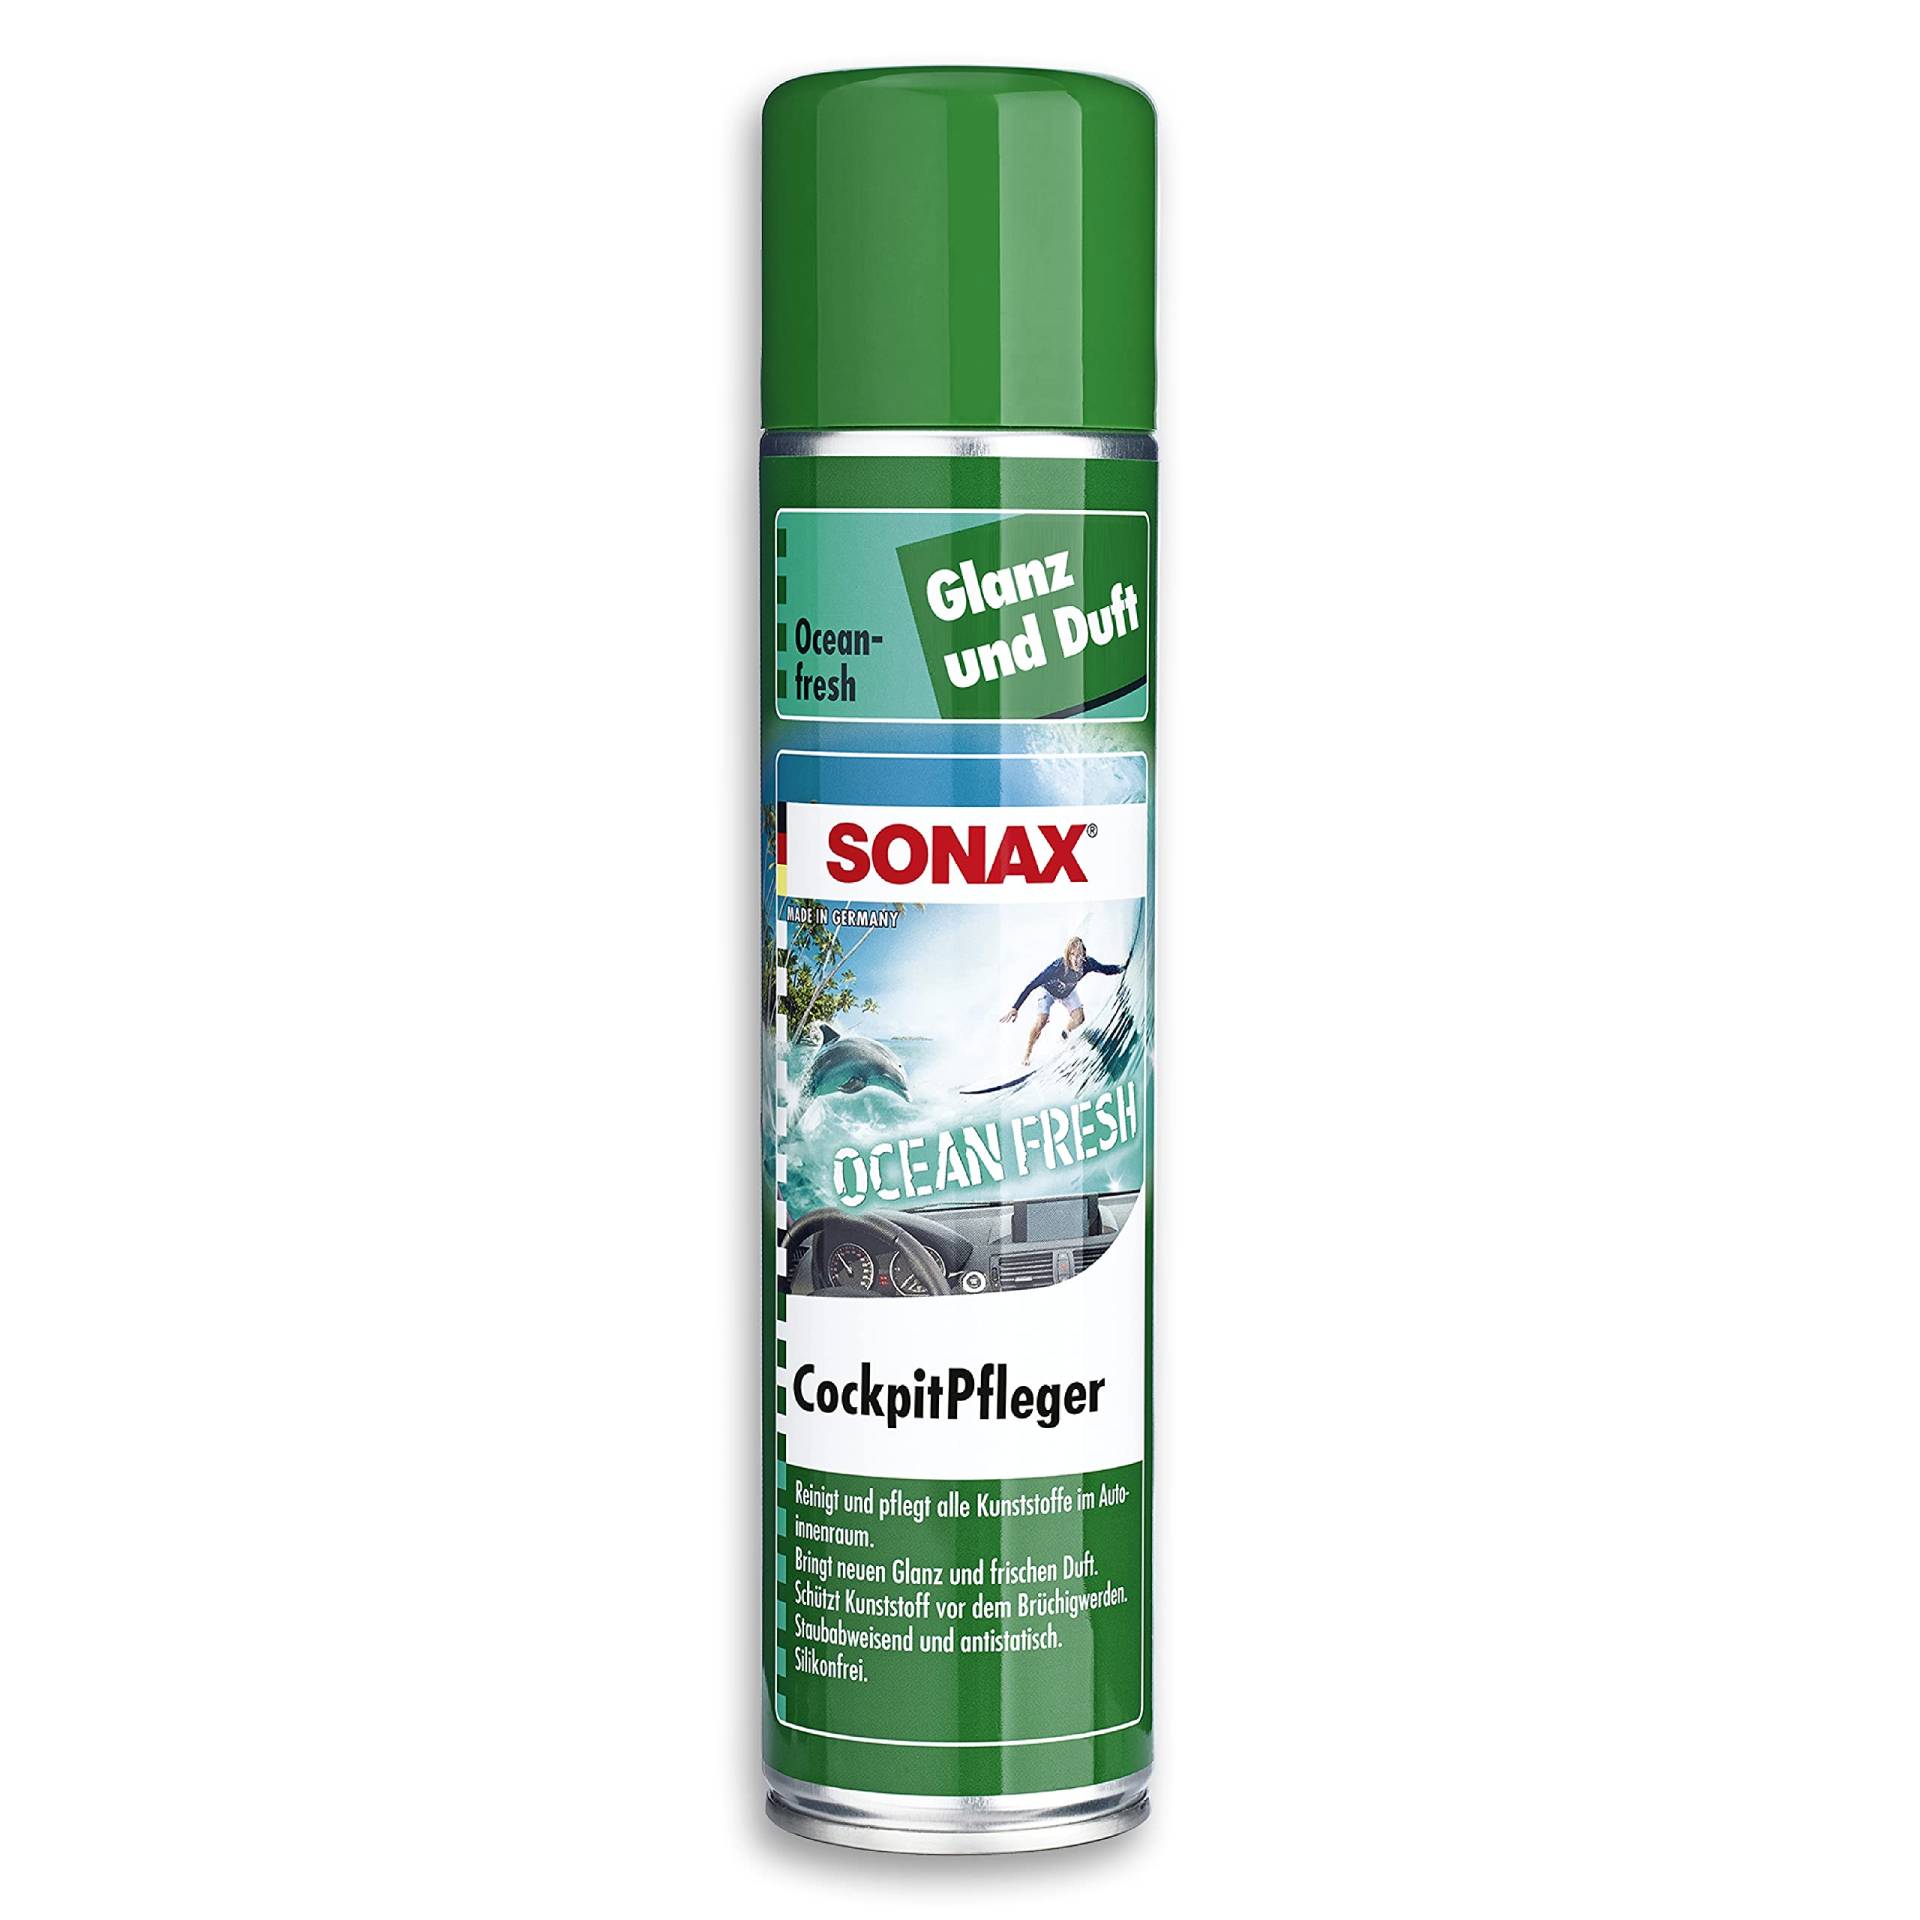 SONAX CockpitPfleger Ocean-Fresh (400 ml) reinigt und pflegt alle Kunststoffteile im Auto | Art-Nr. 03643000 von SONAX